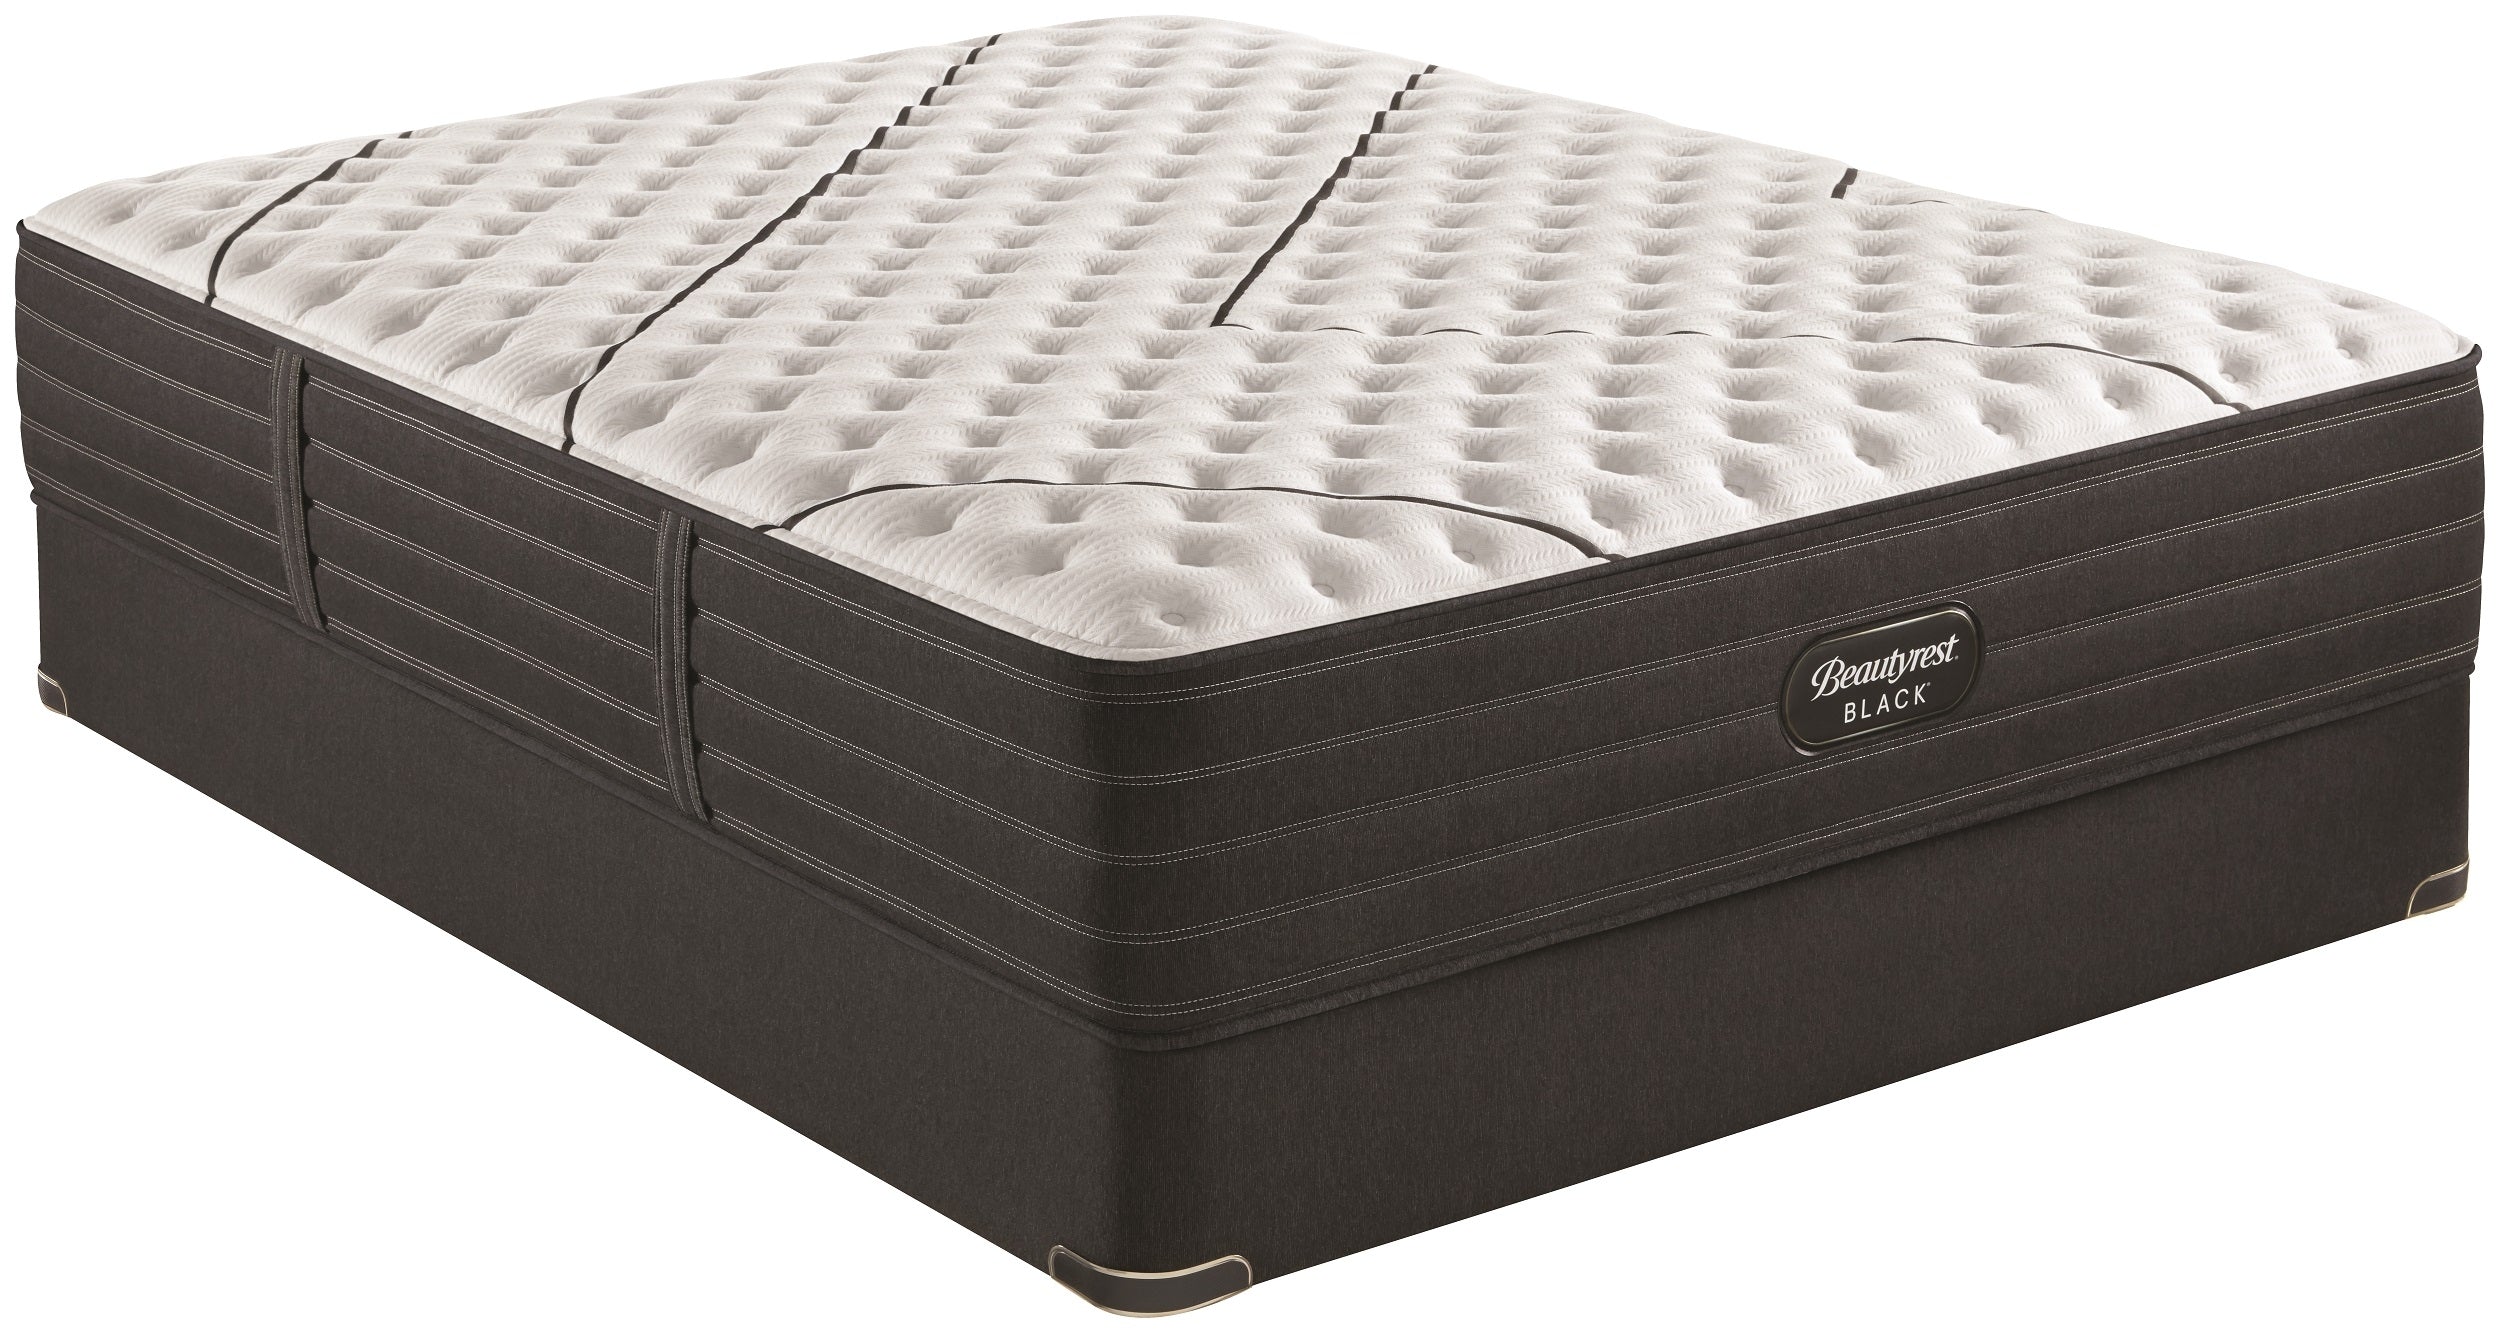 beautyrest black extra firm full mattress